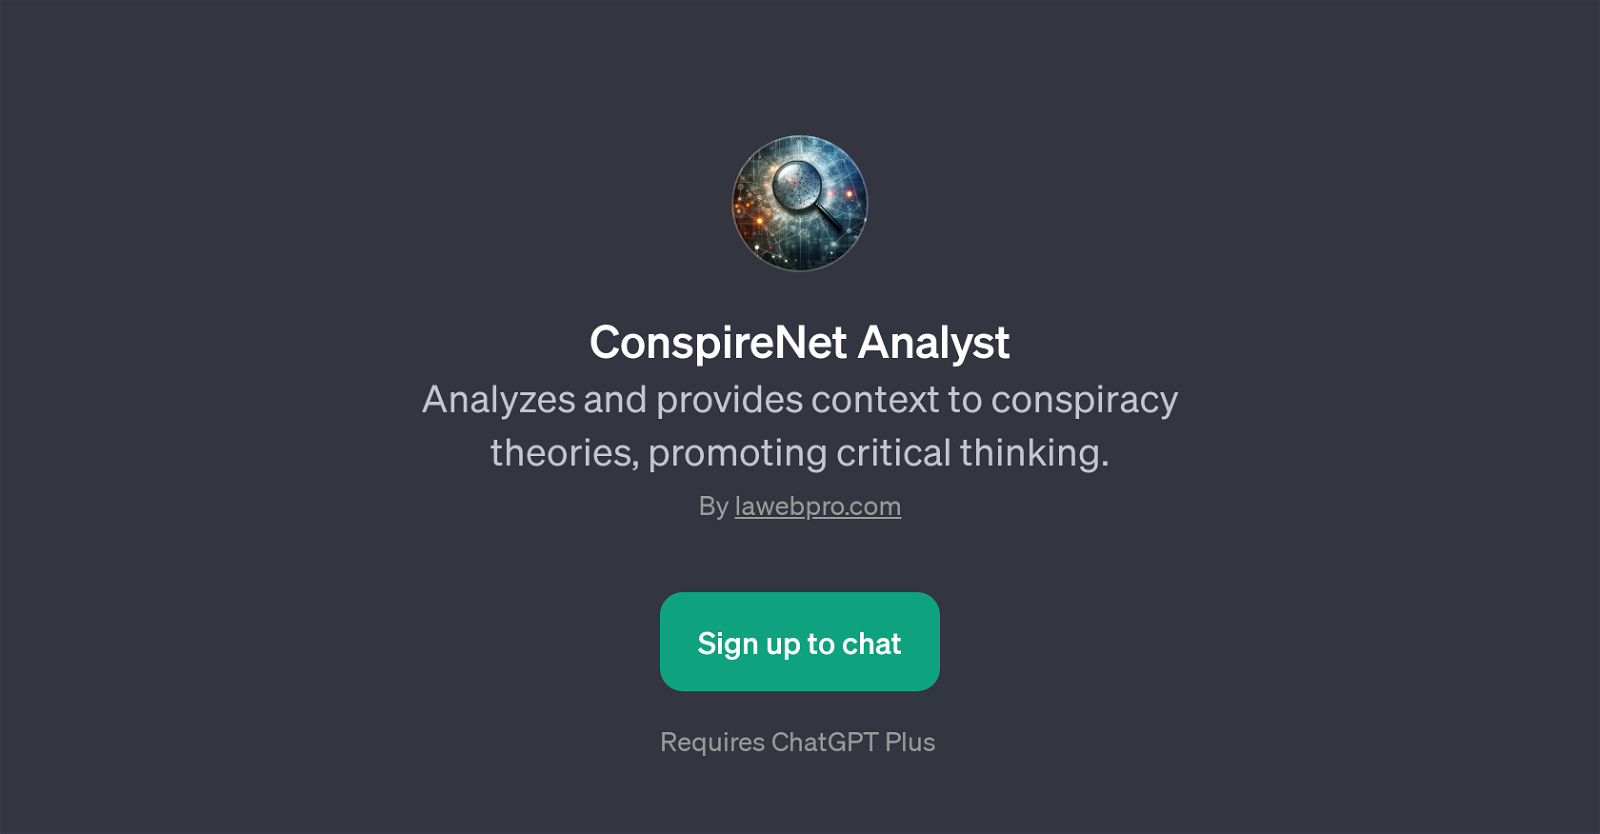 ConspireNet Analyst website